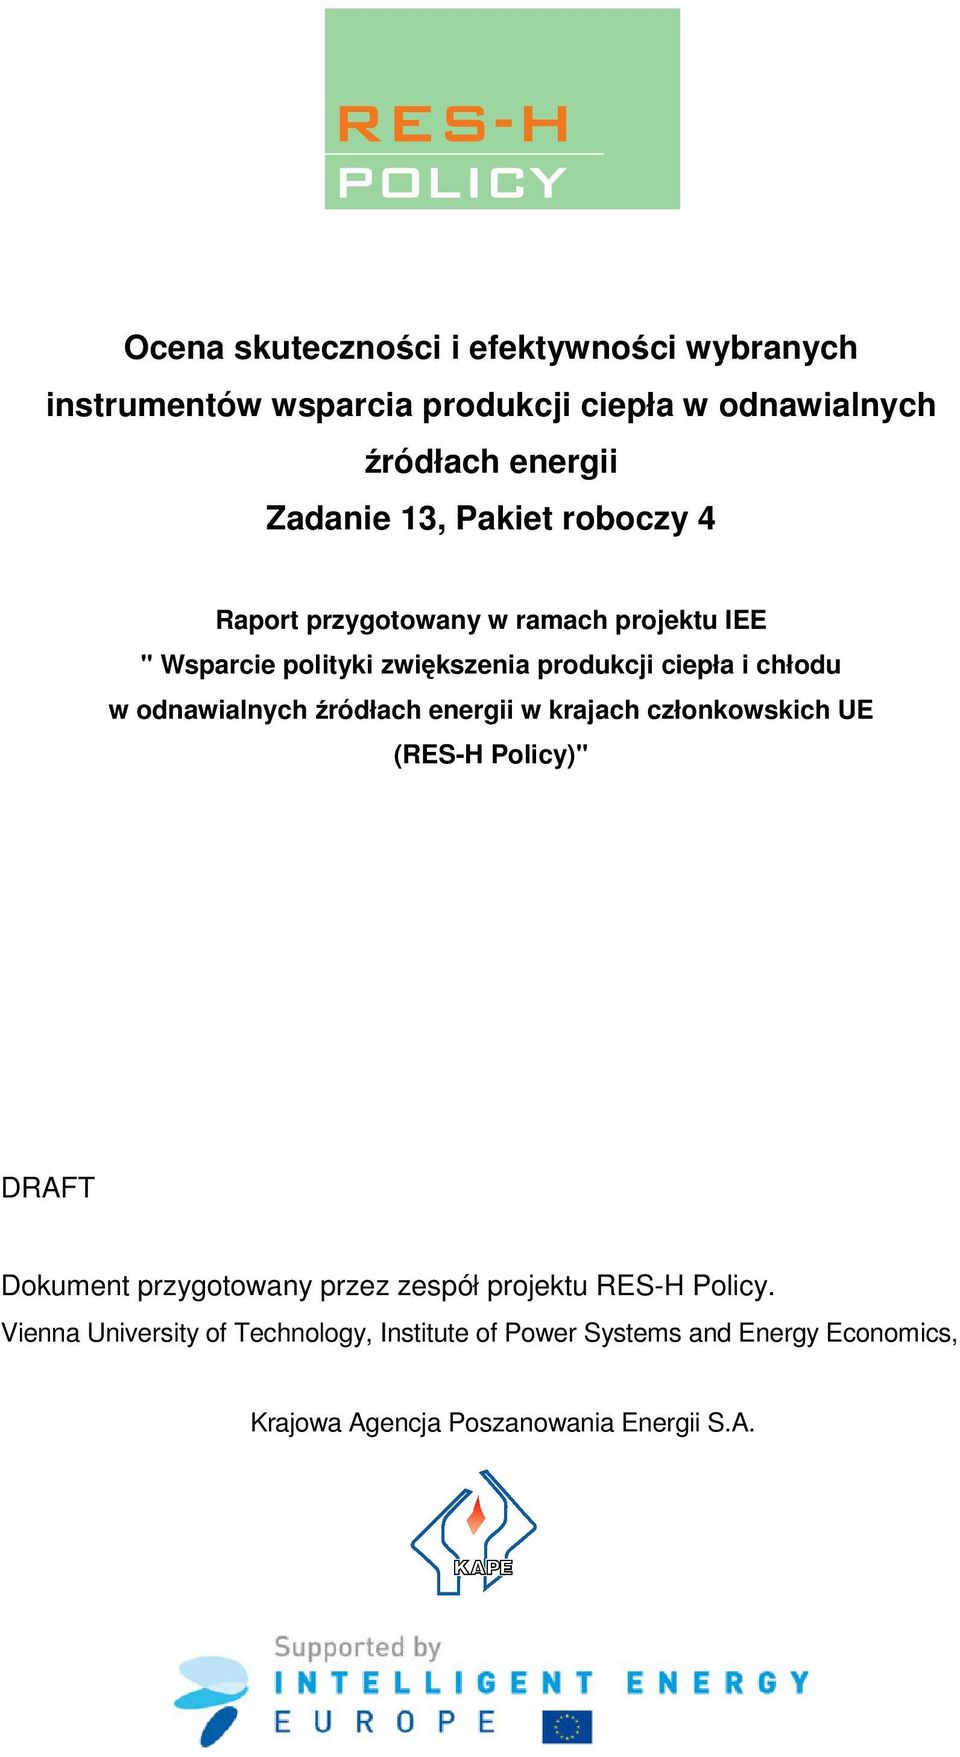 odnawialnych źródłach energii w krajach członkowskich UE (RES-H Policy)" DRAFT Dokument przygotowany przez zespół projektu